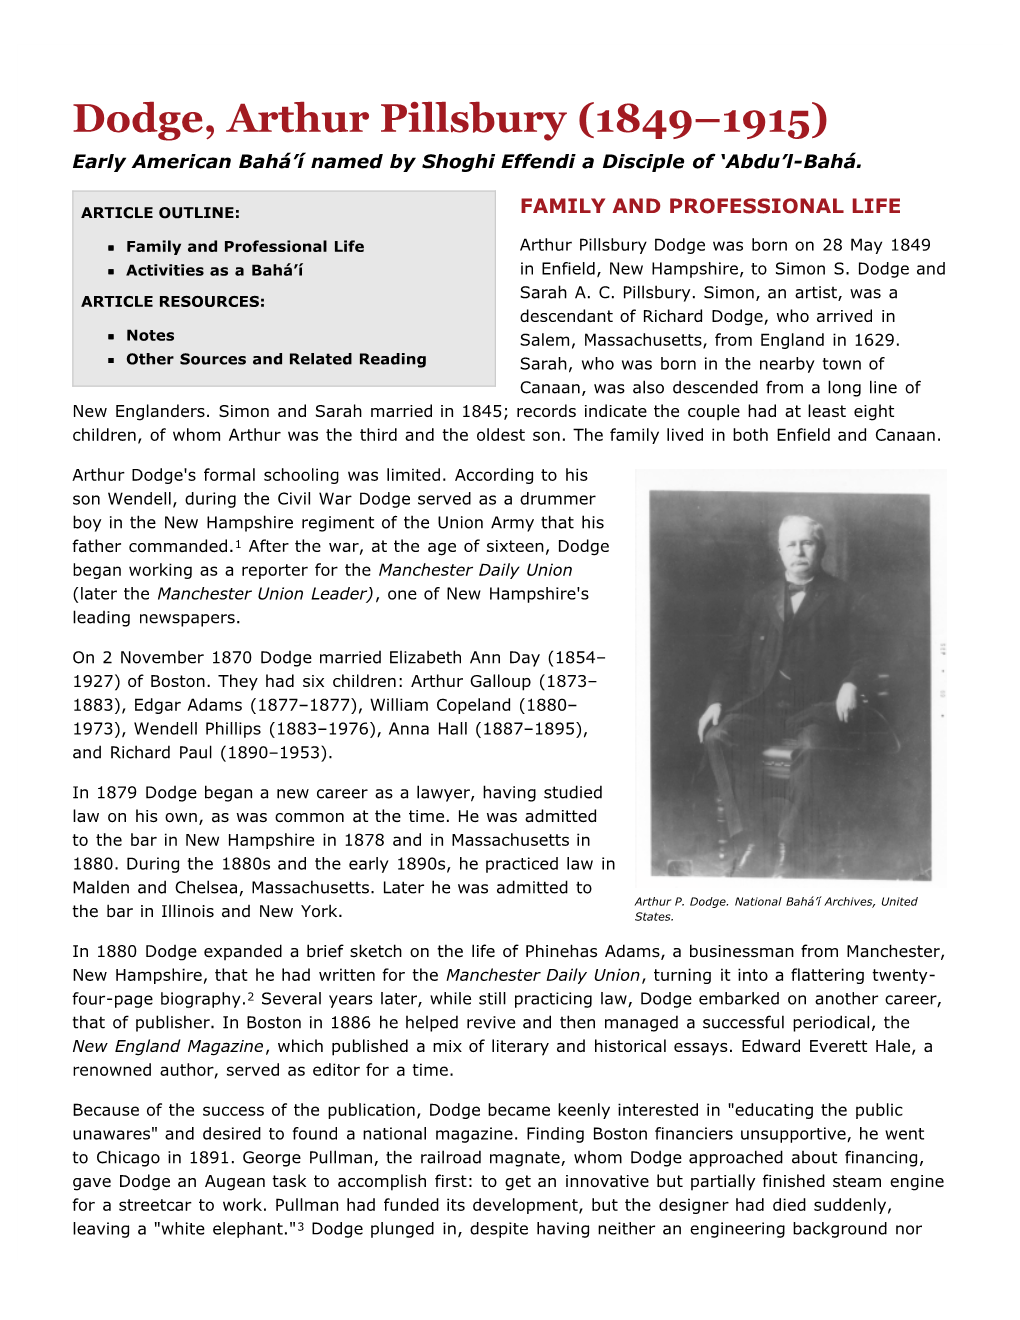 Dodge, Arthur Pillsbury (1849–1915) Early American Bahá’Í Named by Shoghi Effendi a Disciple of ‘Abdu’L-Bahá